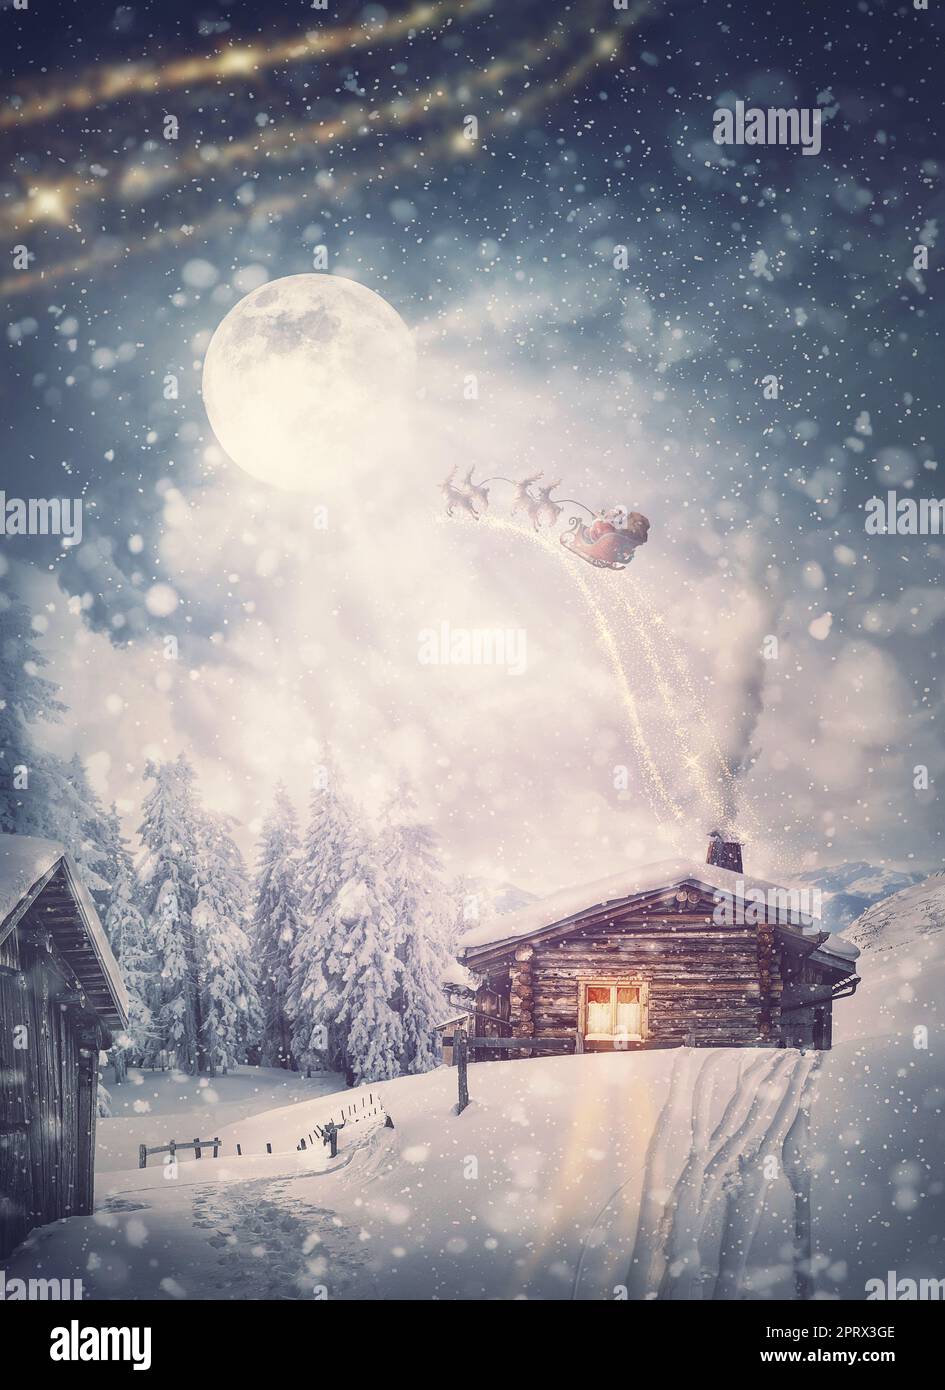 Magico scenario natalizio e slitta di Babbo Natale con renne che volano sopra la casa innevata durante la vigilia di Natale. Meravigliosi fiocchi di neve che coprono il villaggio, e la luna piena esce dalle nuvole Foto Stock